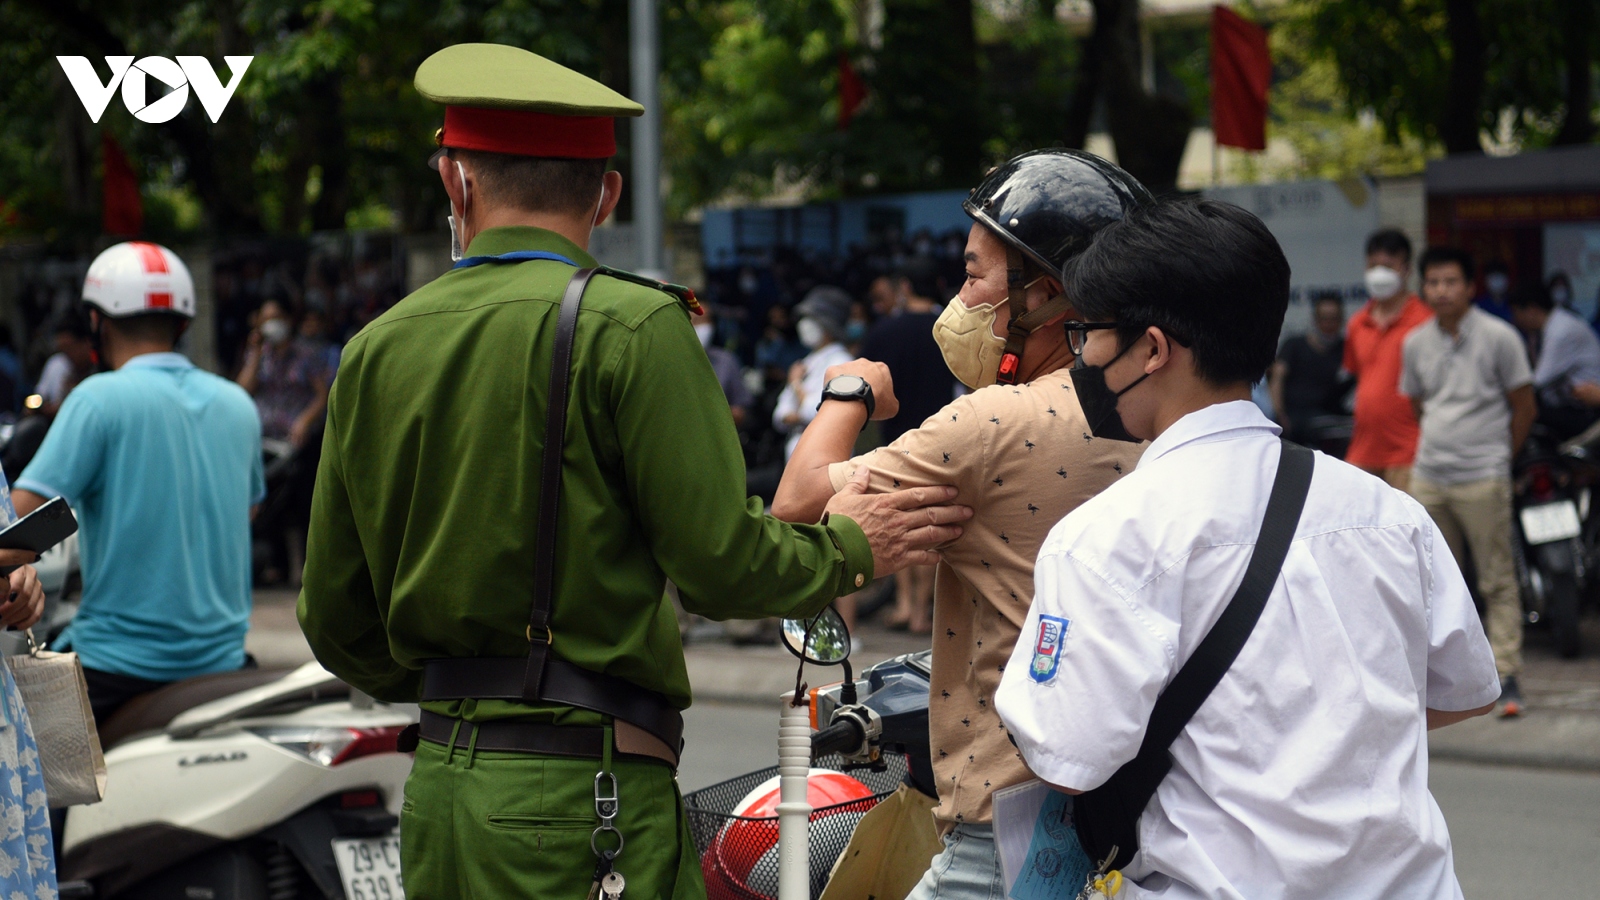 Thi vào 10 ở Hà Nội: Phụ huynh tất bật chạy ngược xuôi vì con nhầm địa điểm thi